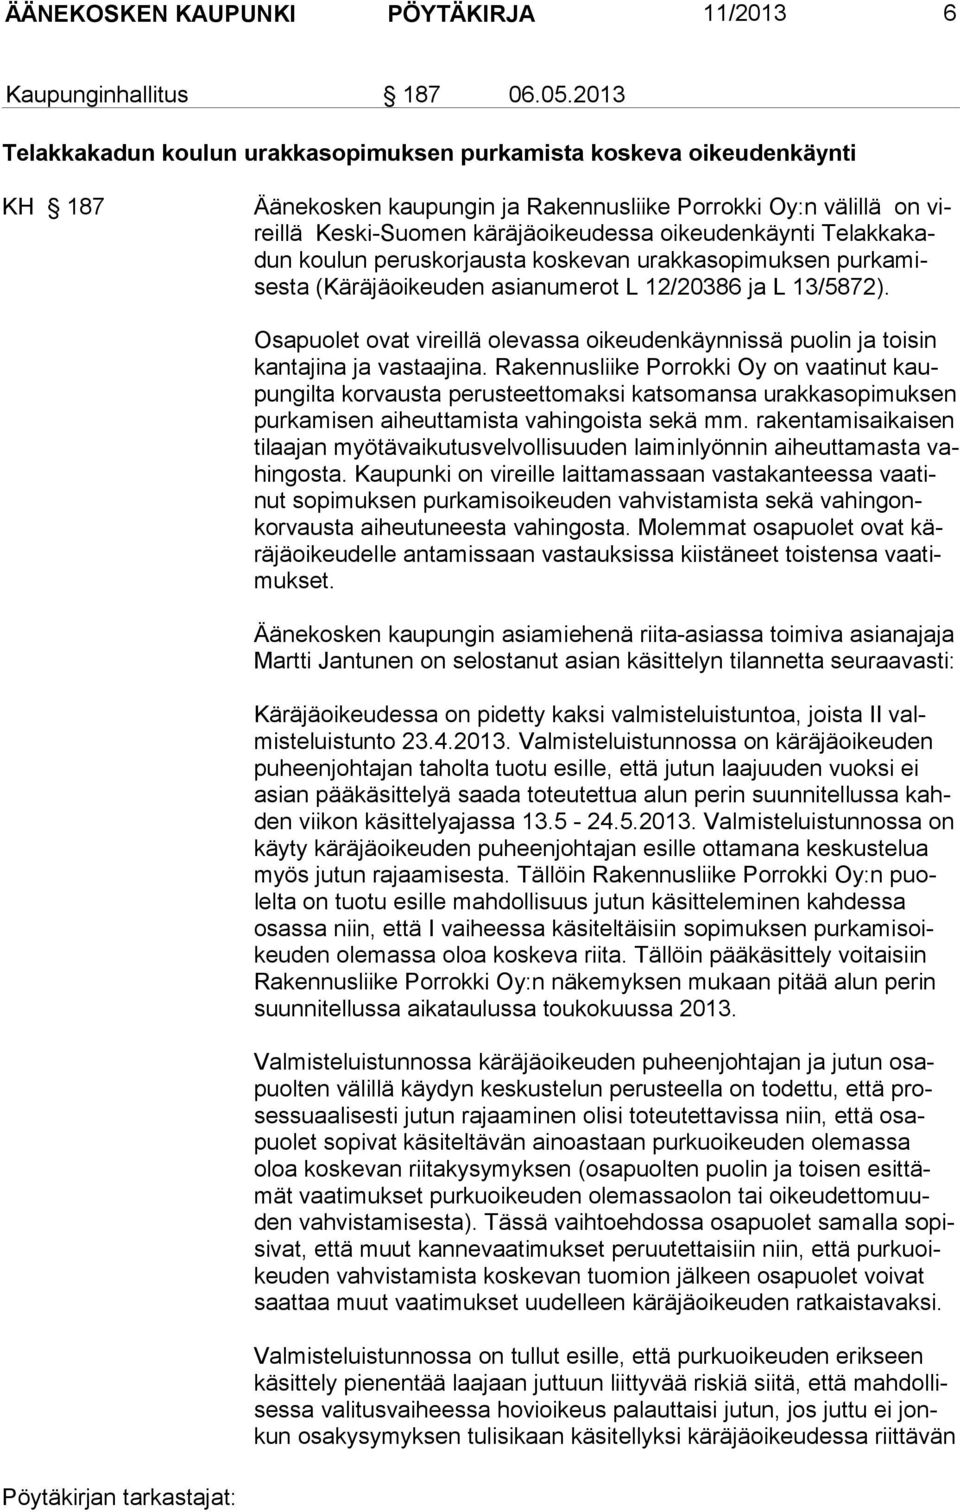 Telakkakadun koulun peruskorjausta koskevan urakkasopimuksen purkamisesta (Käräjäoikeuden asianumerot L 12/20386 ja L 13/5872).